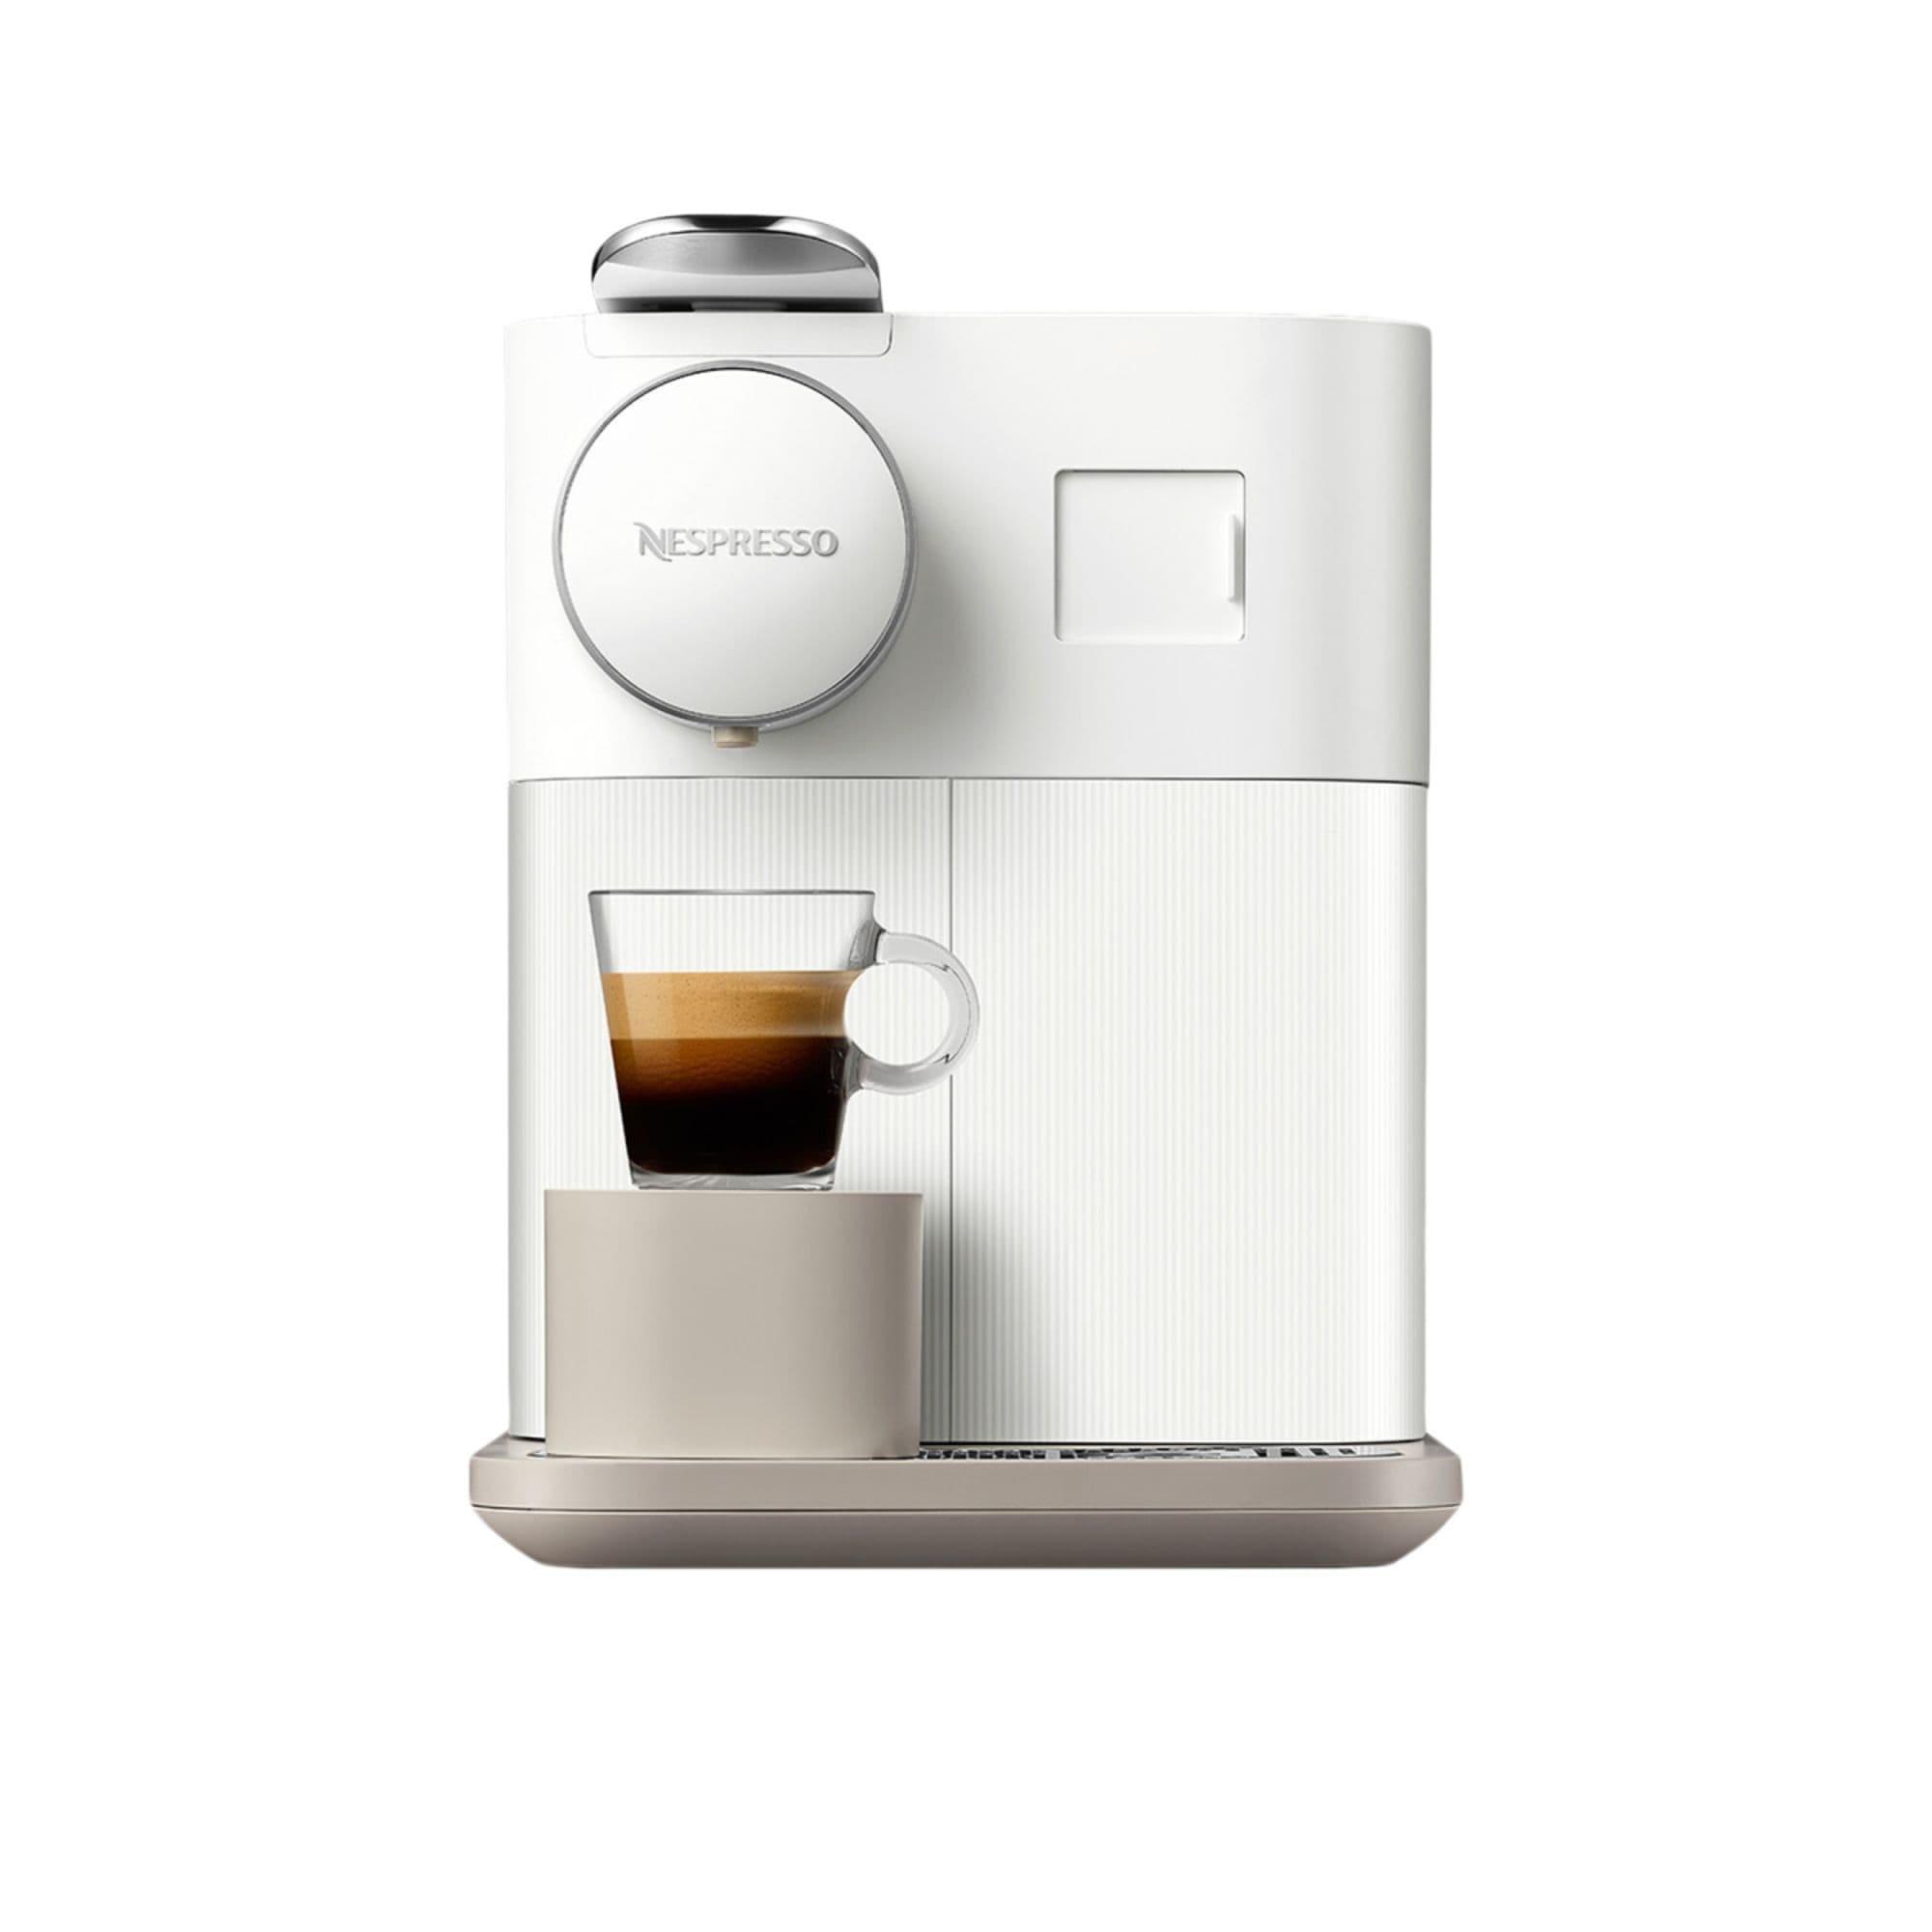 DeLonghi Nespresso Gran Lattisima EN640W Automatic Capsule Coffee Machine White Image 6